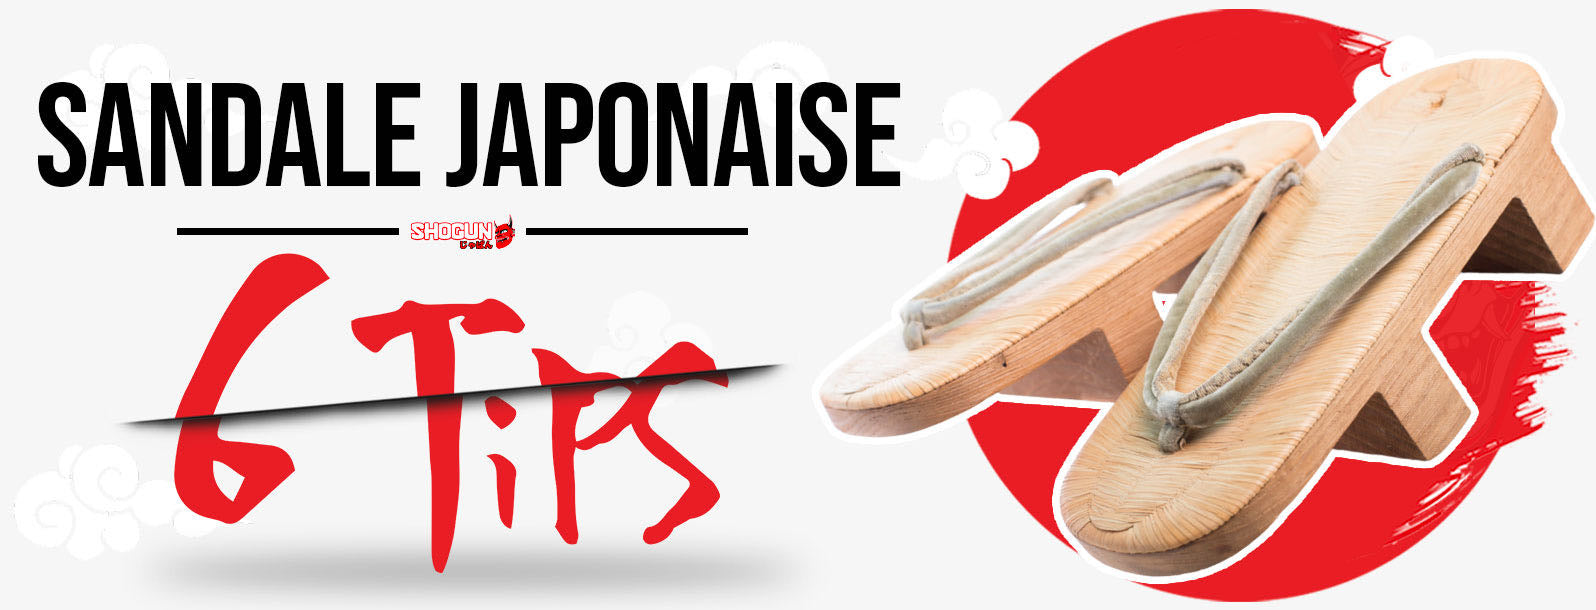 sandales-japonaises